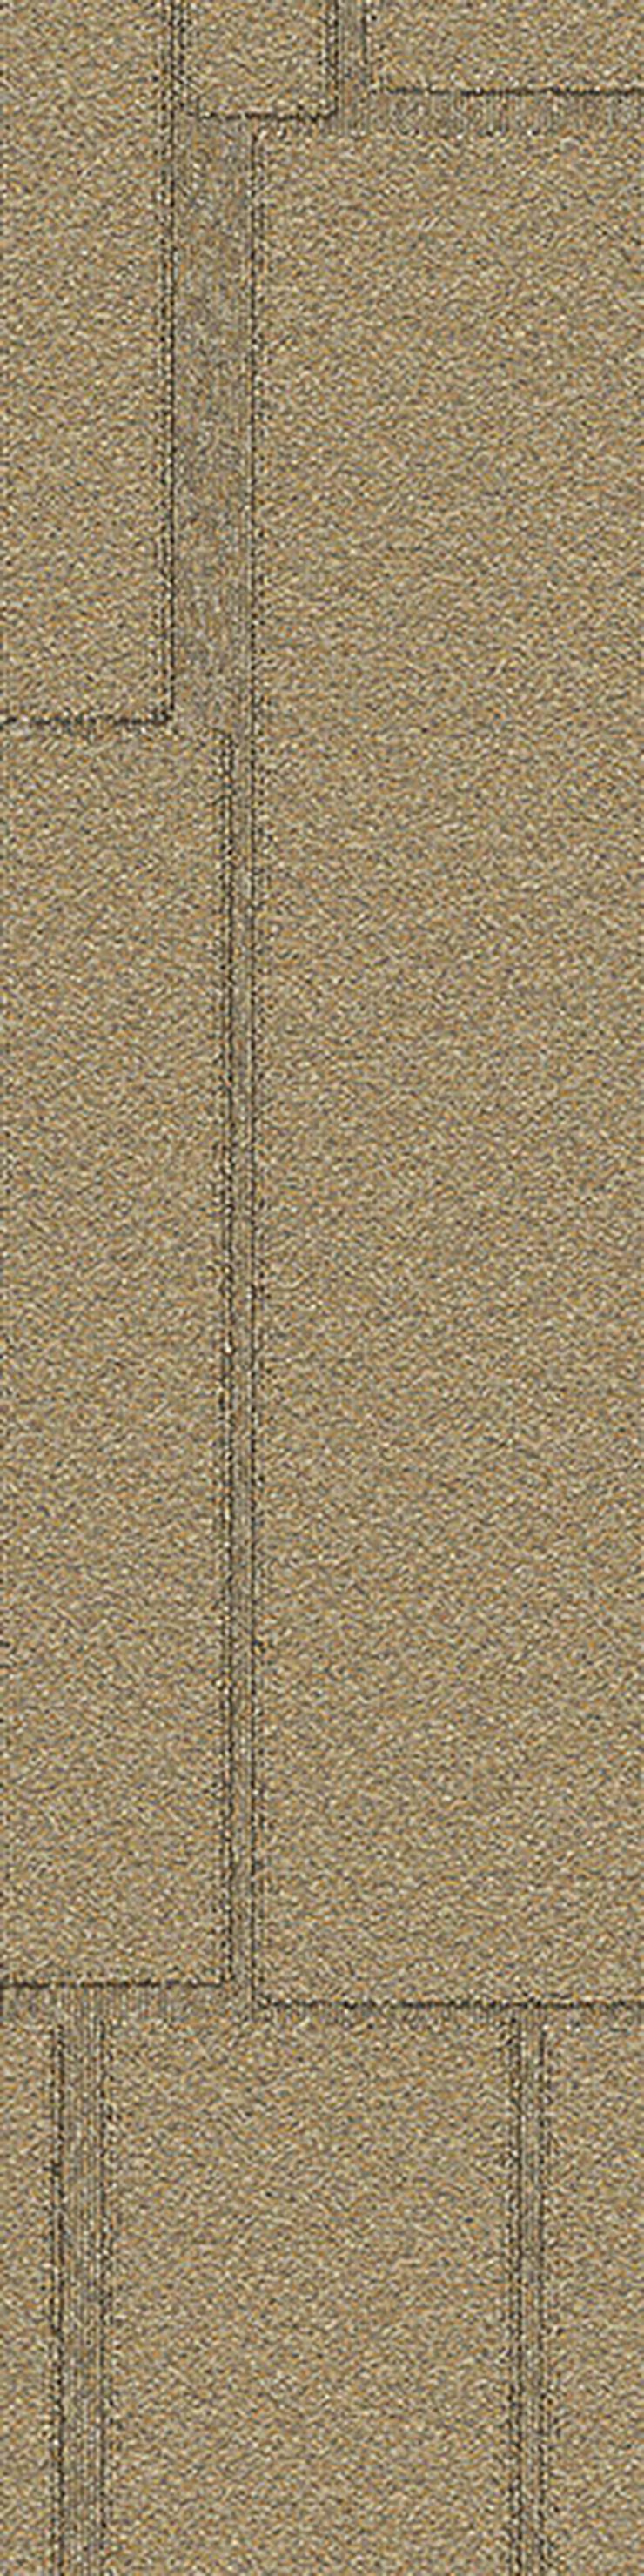 25 x 100cm Teppichfliesen mit schönem Muster * ANGEBOT! - Teppiche - Bild 2